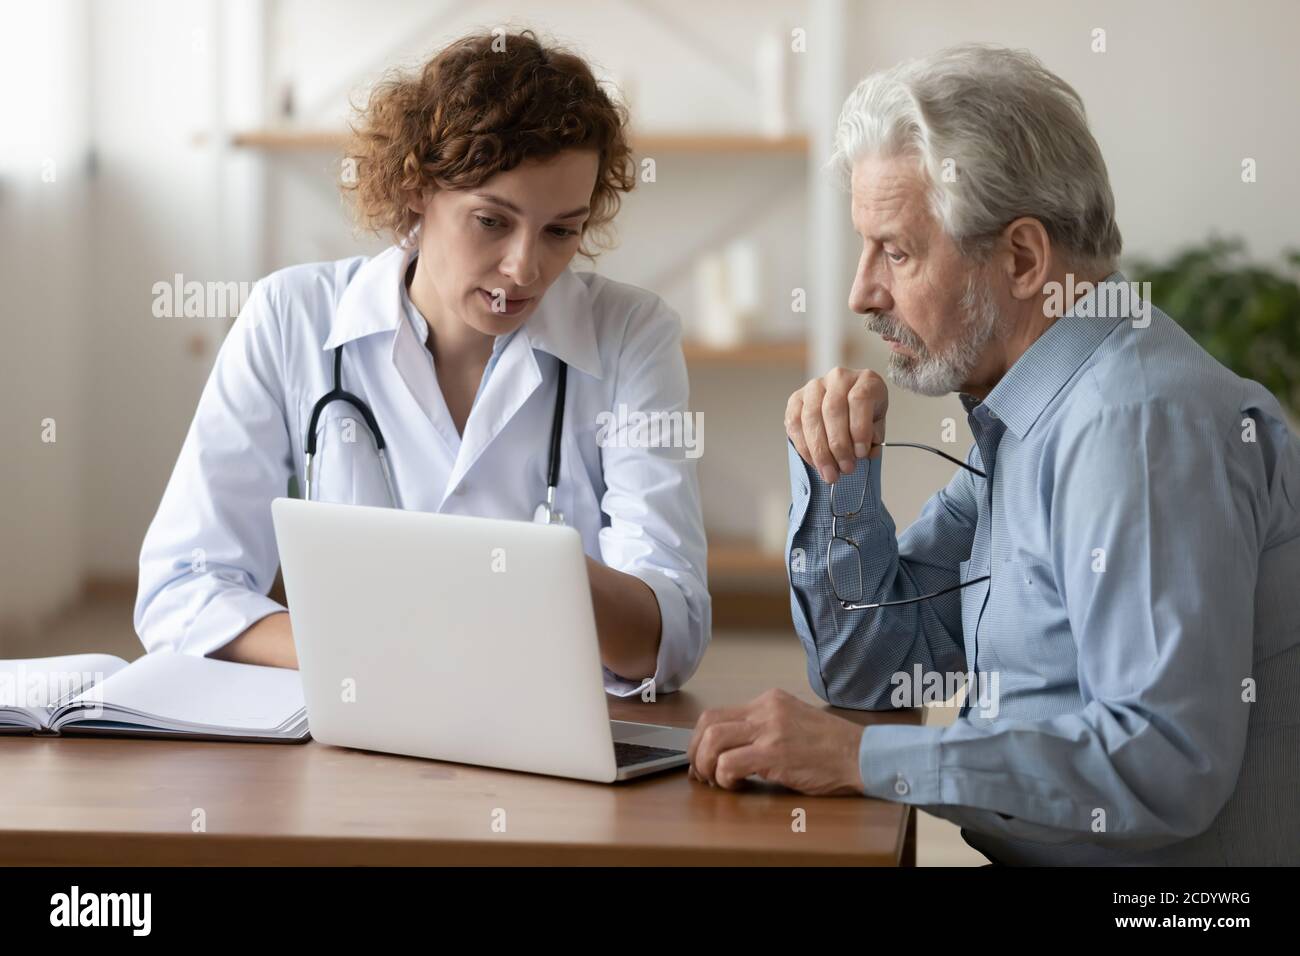 Médecin confiant consultant un patient mature à un rendez-vous médical Banque D'Images